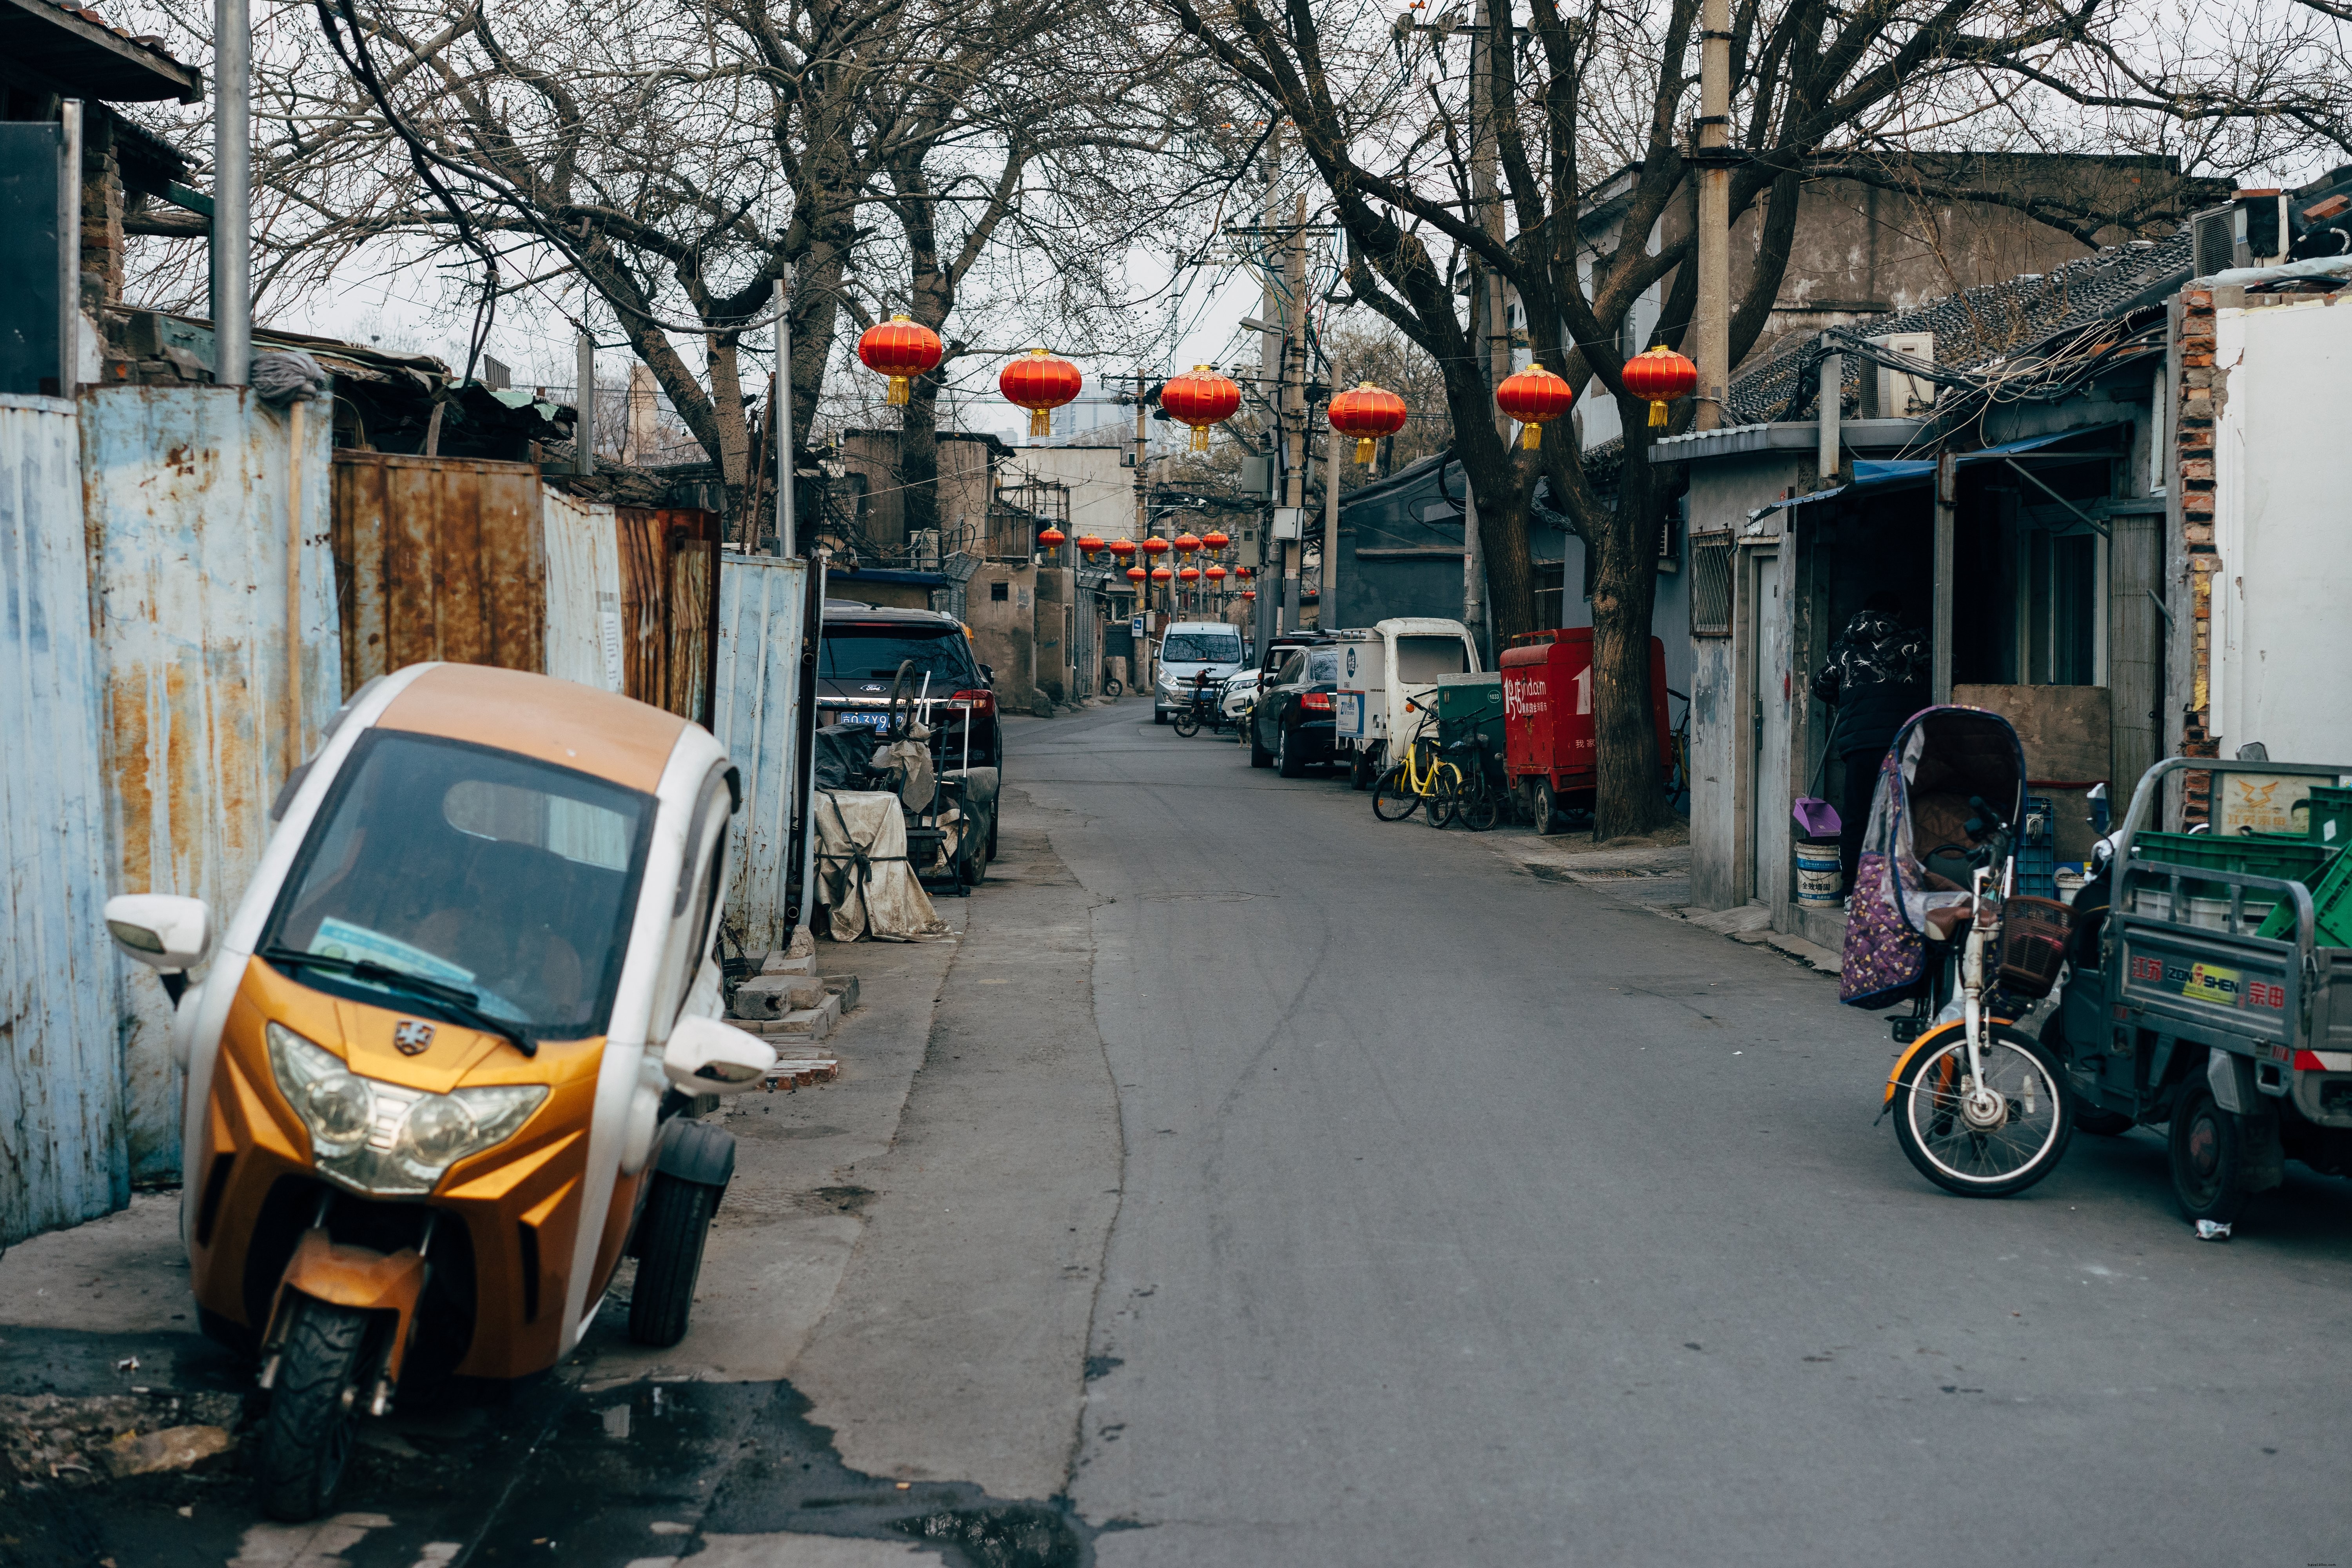 Foto de calles chinas vacías con linternas 